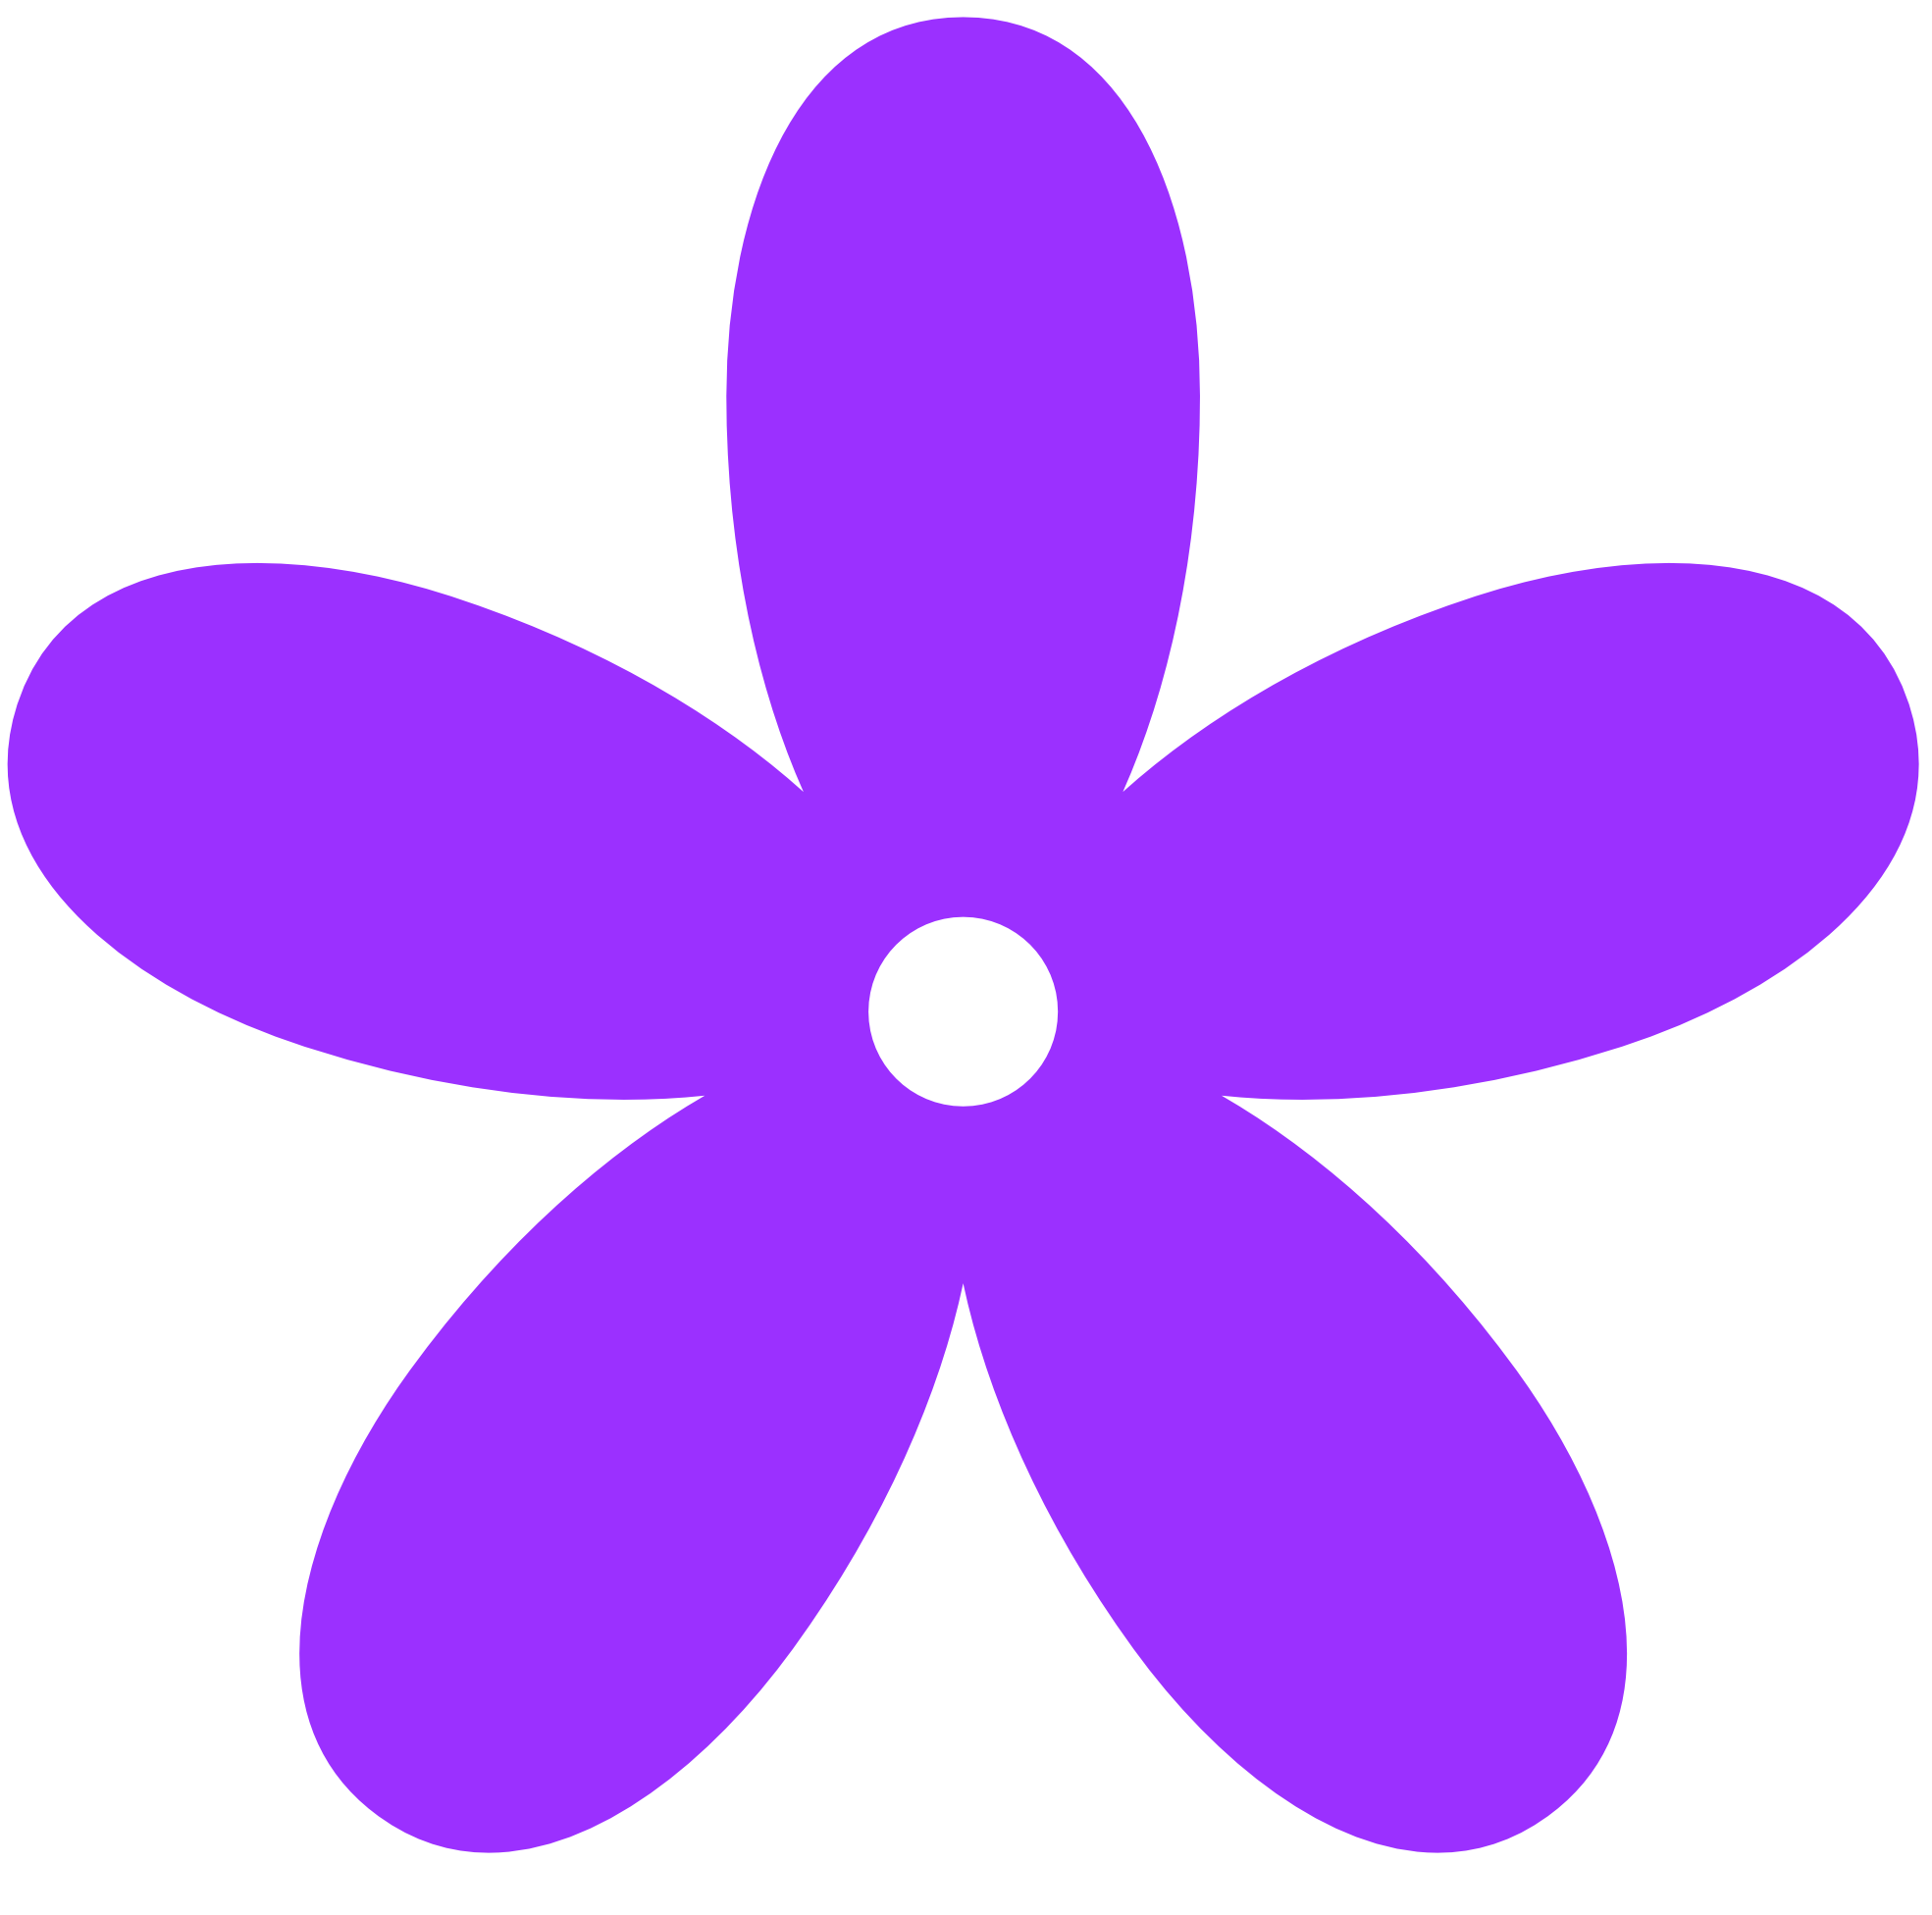 Retro Flower 8 Color Colour Purple 1 Peace xochi.info ...